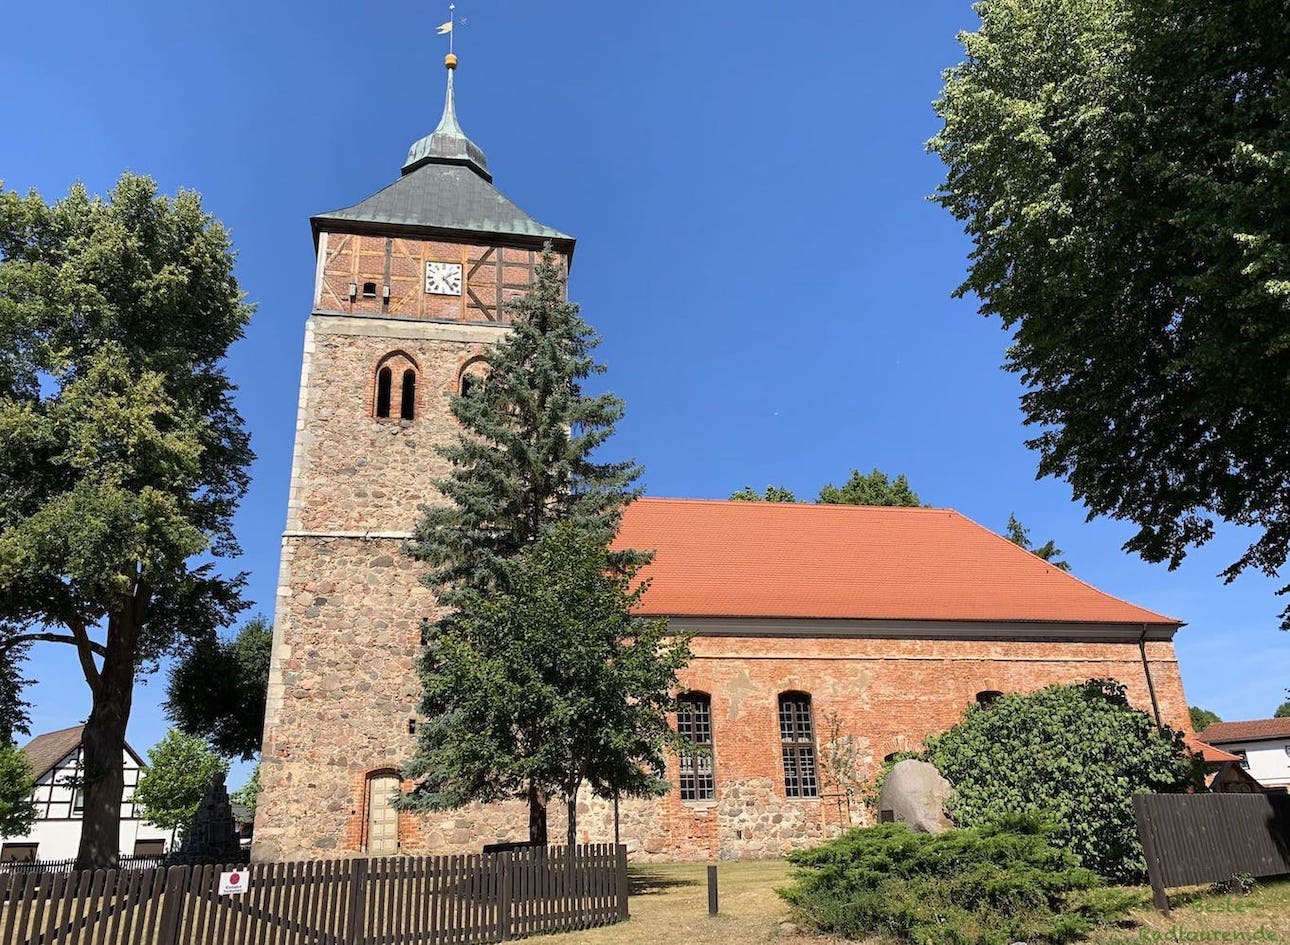 Die Dorfkirche bzw Immanuelkirche in Groß Schönebeck